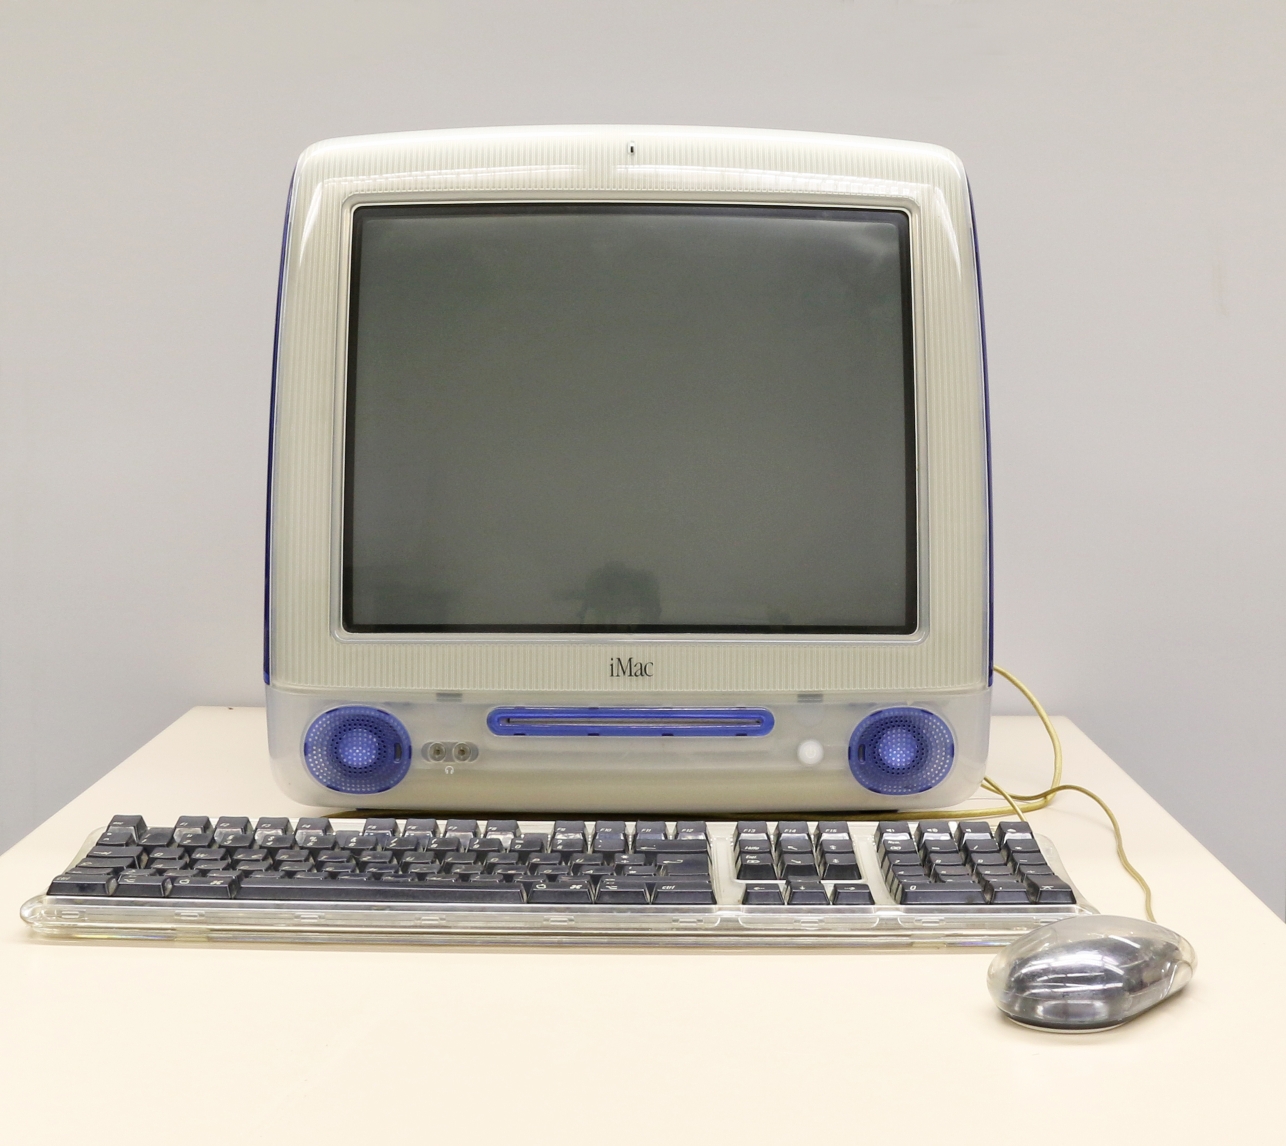 Der Apple iMac G3 von 1998 repräsentiert neben anderen IBM-kompatiblen PCs die Generation der Personal Computer, die heute in nahezu jedem Haushalt vorhanden sind.